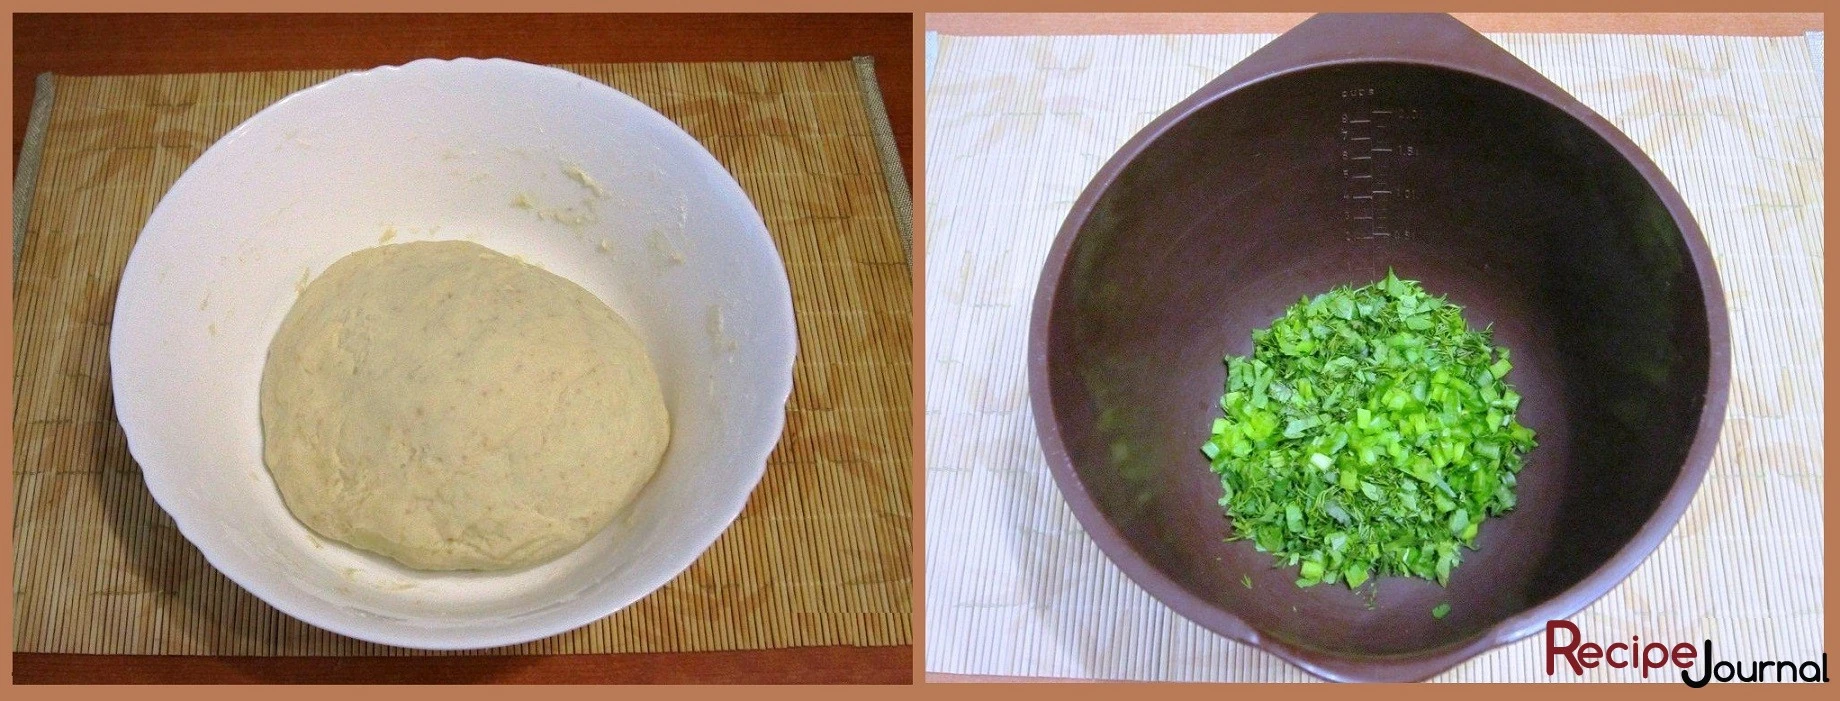 Замешиваем тесто и отставляем для подъема на полчаса. Пока готовим начинку - мелко режем промытую зелень.